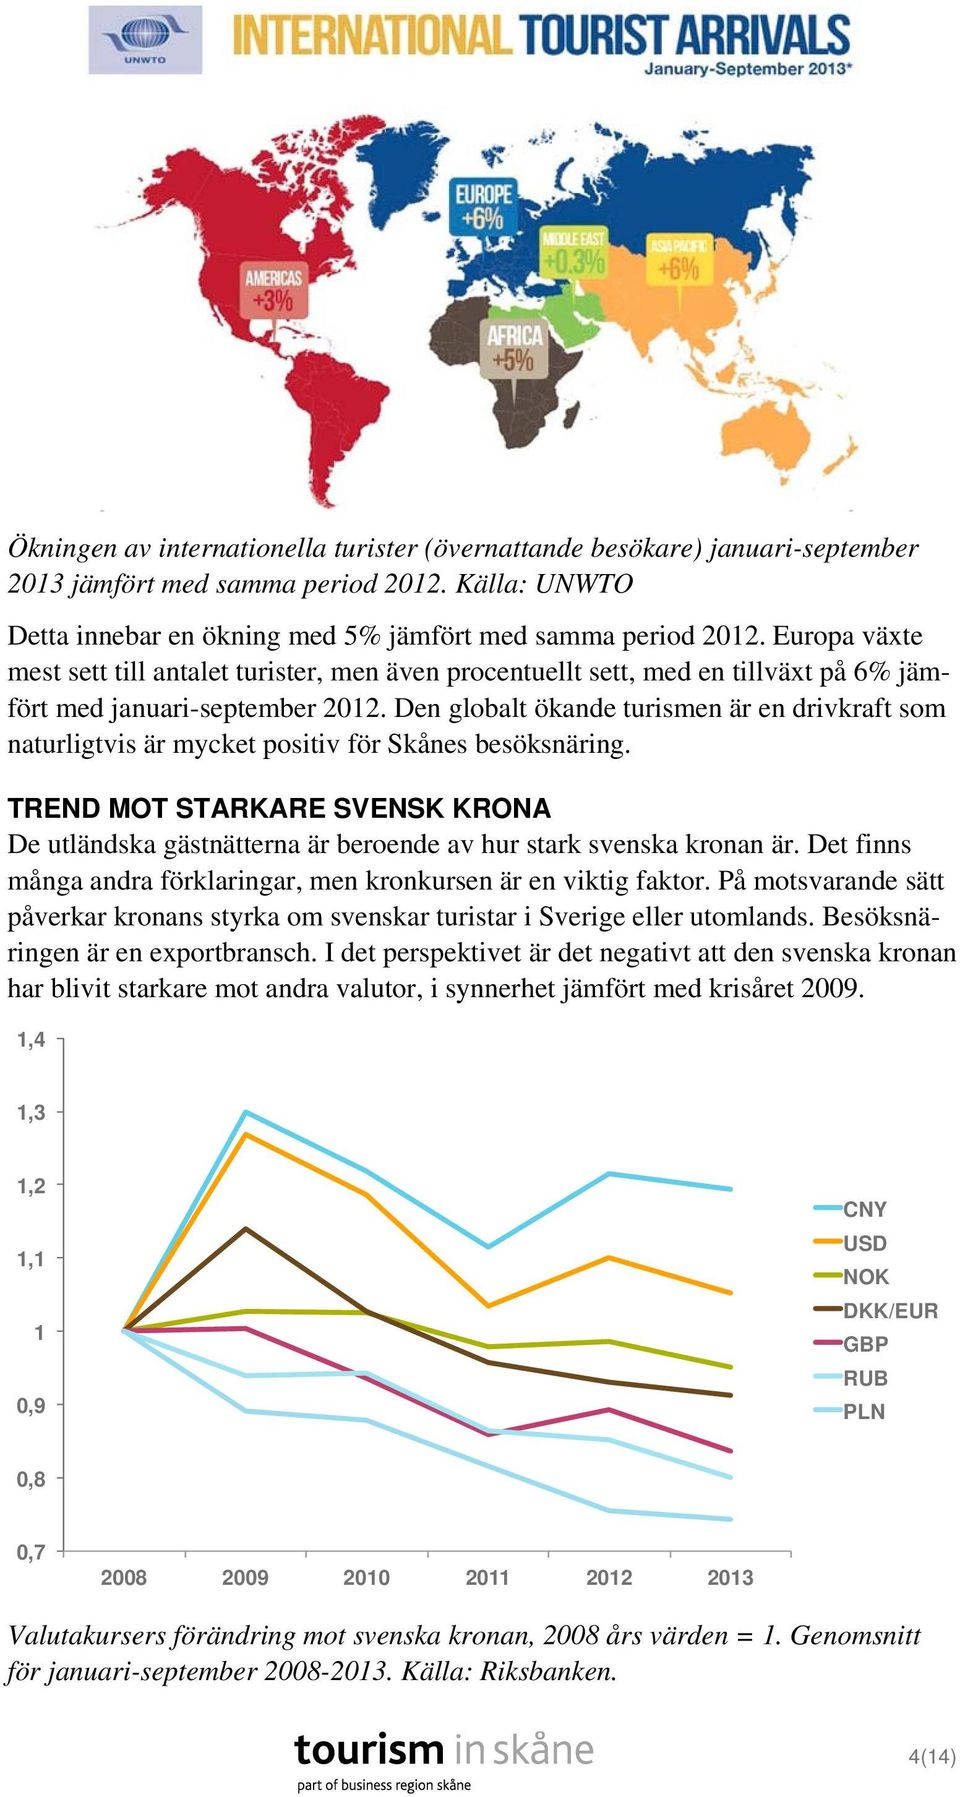 Den globalt ökande turismen är en drivkraft som naturligtvis är mycket positiv för Skånes besöksnäring.